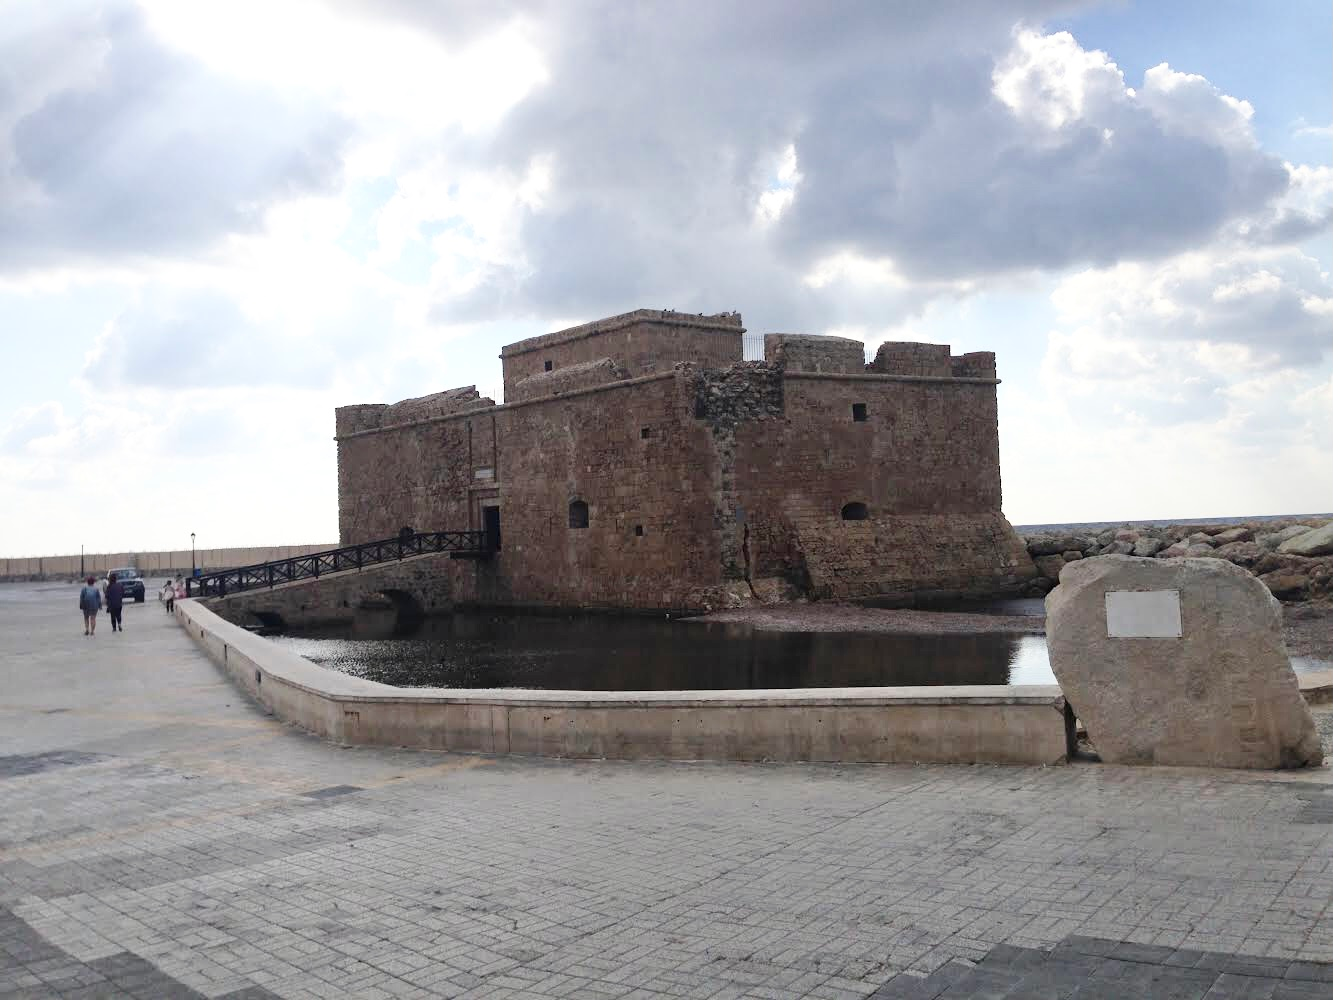 Paphos Medieval Castle